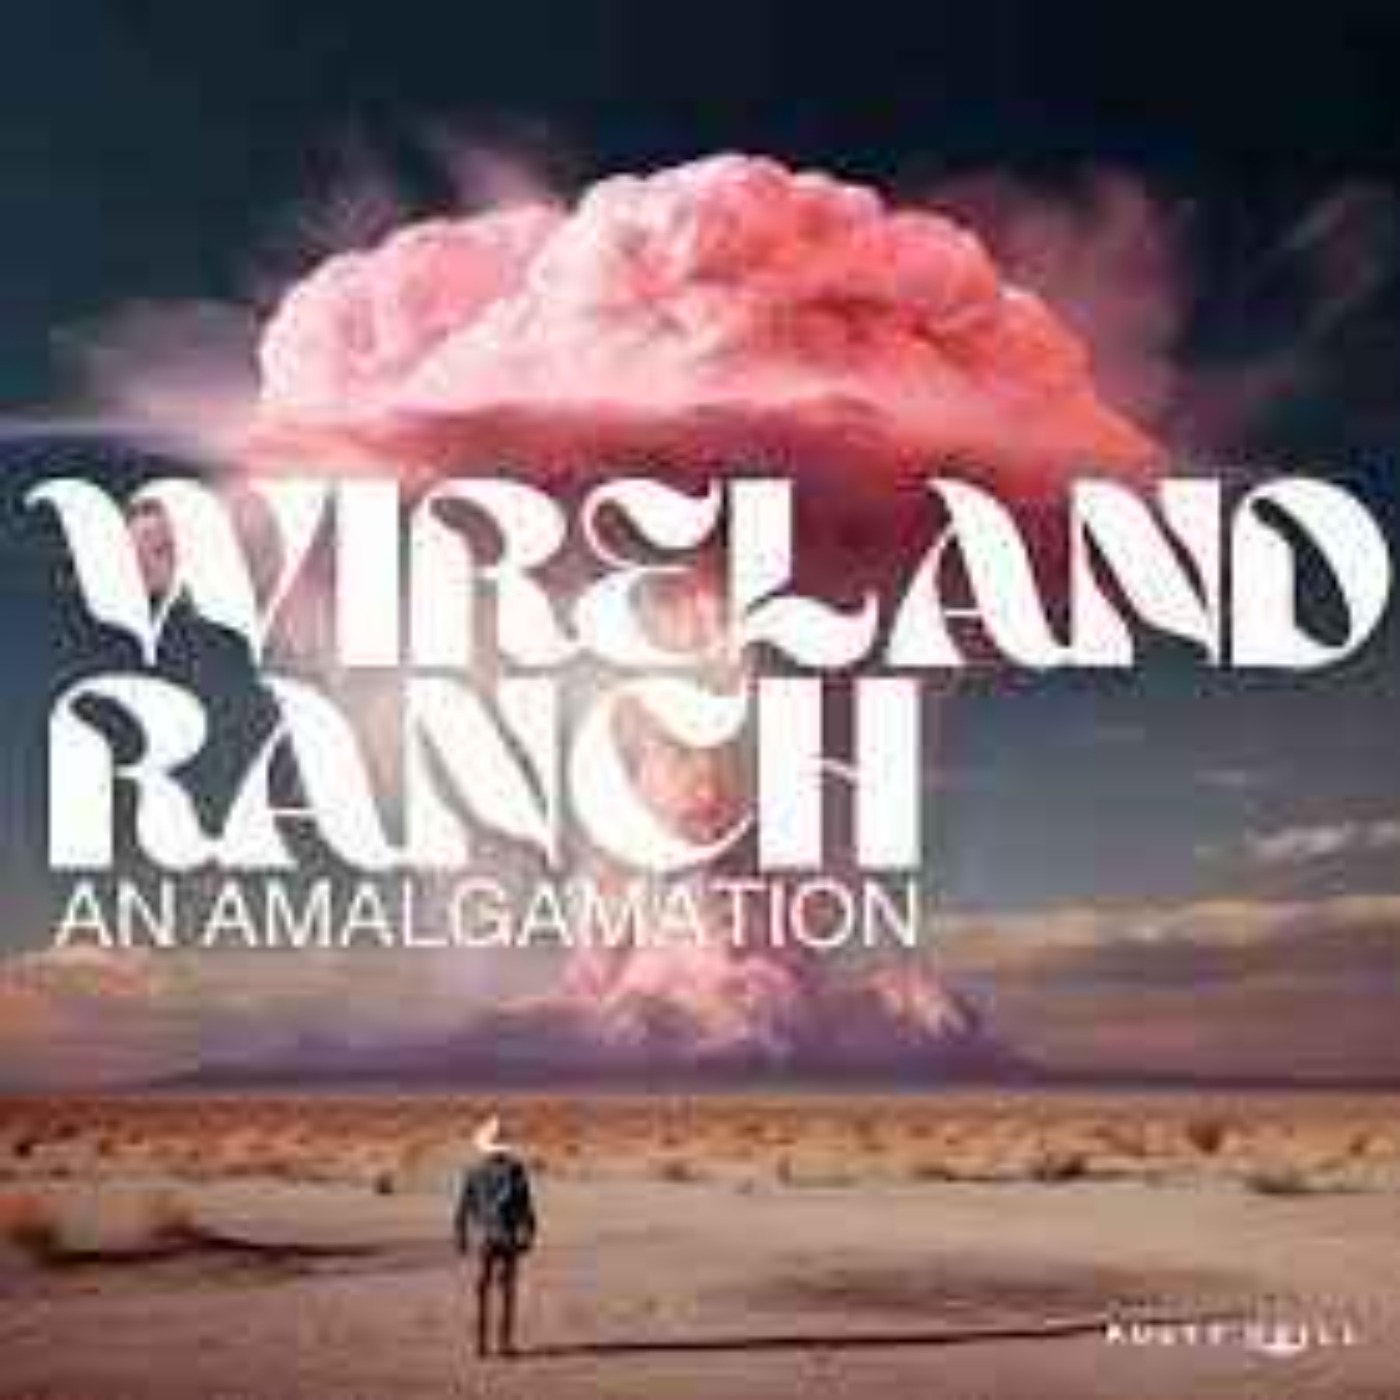 Feed Drop - Wireland Ranch